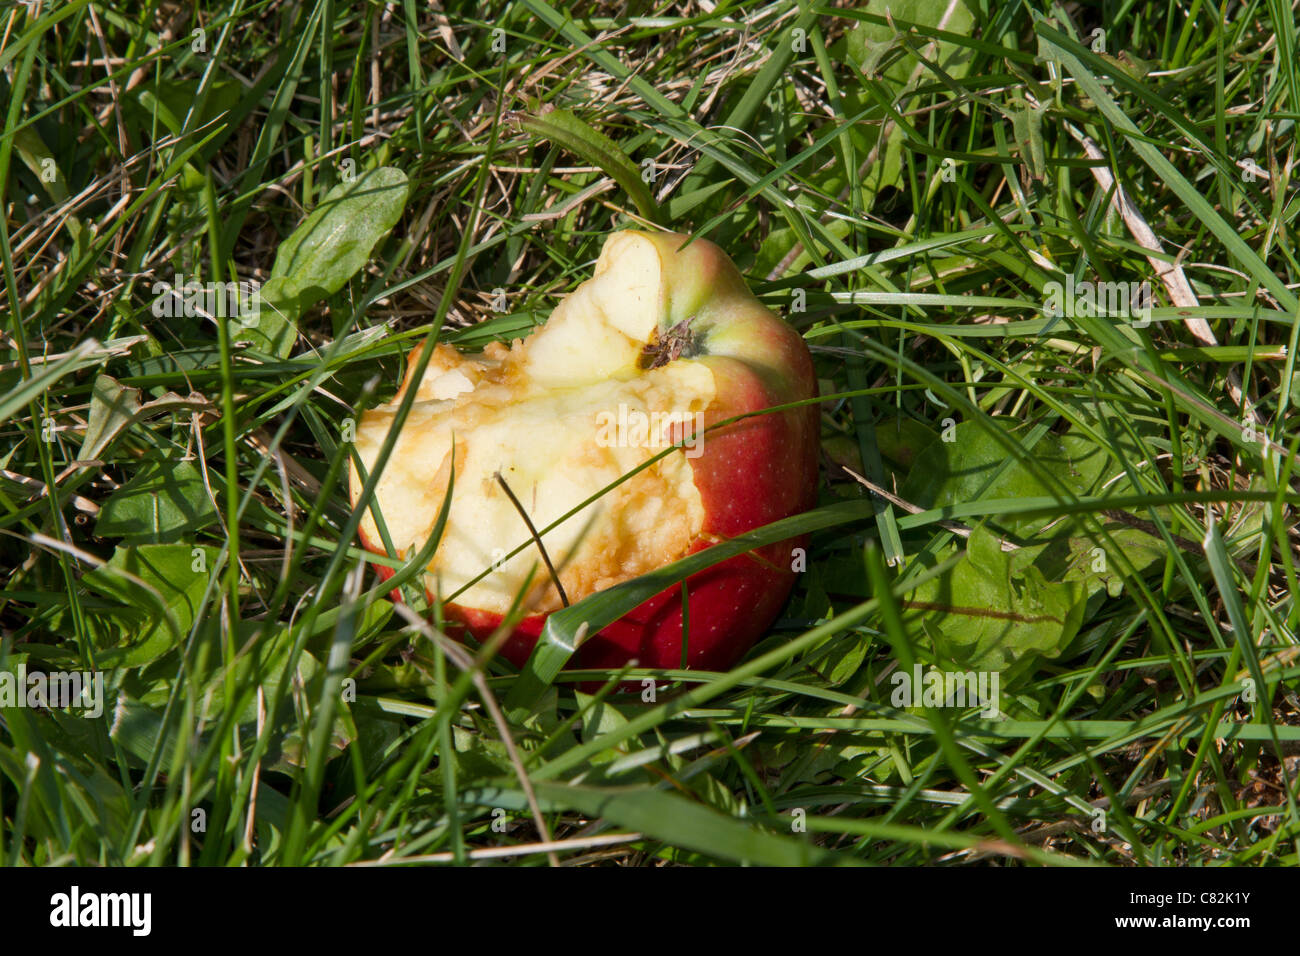 half eaten apple rotten Stock Photo